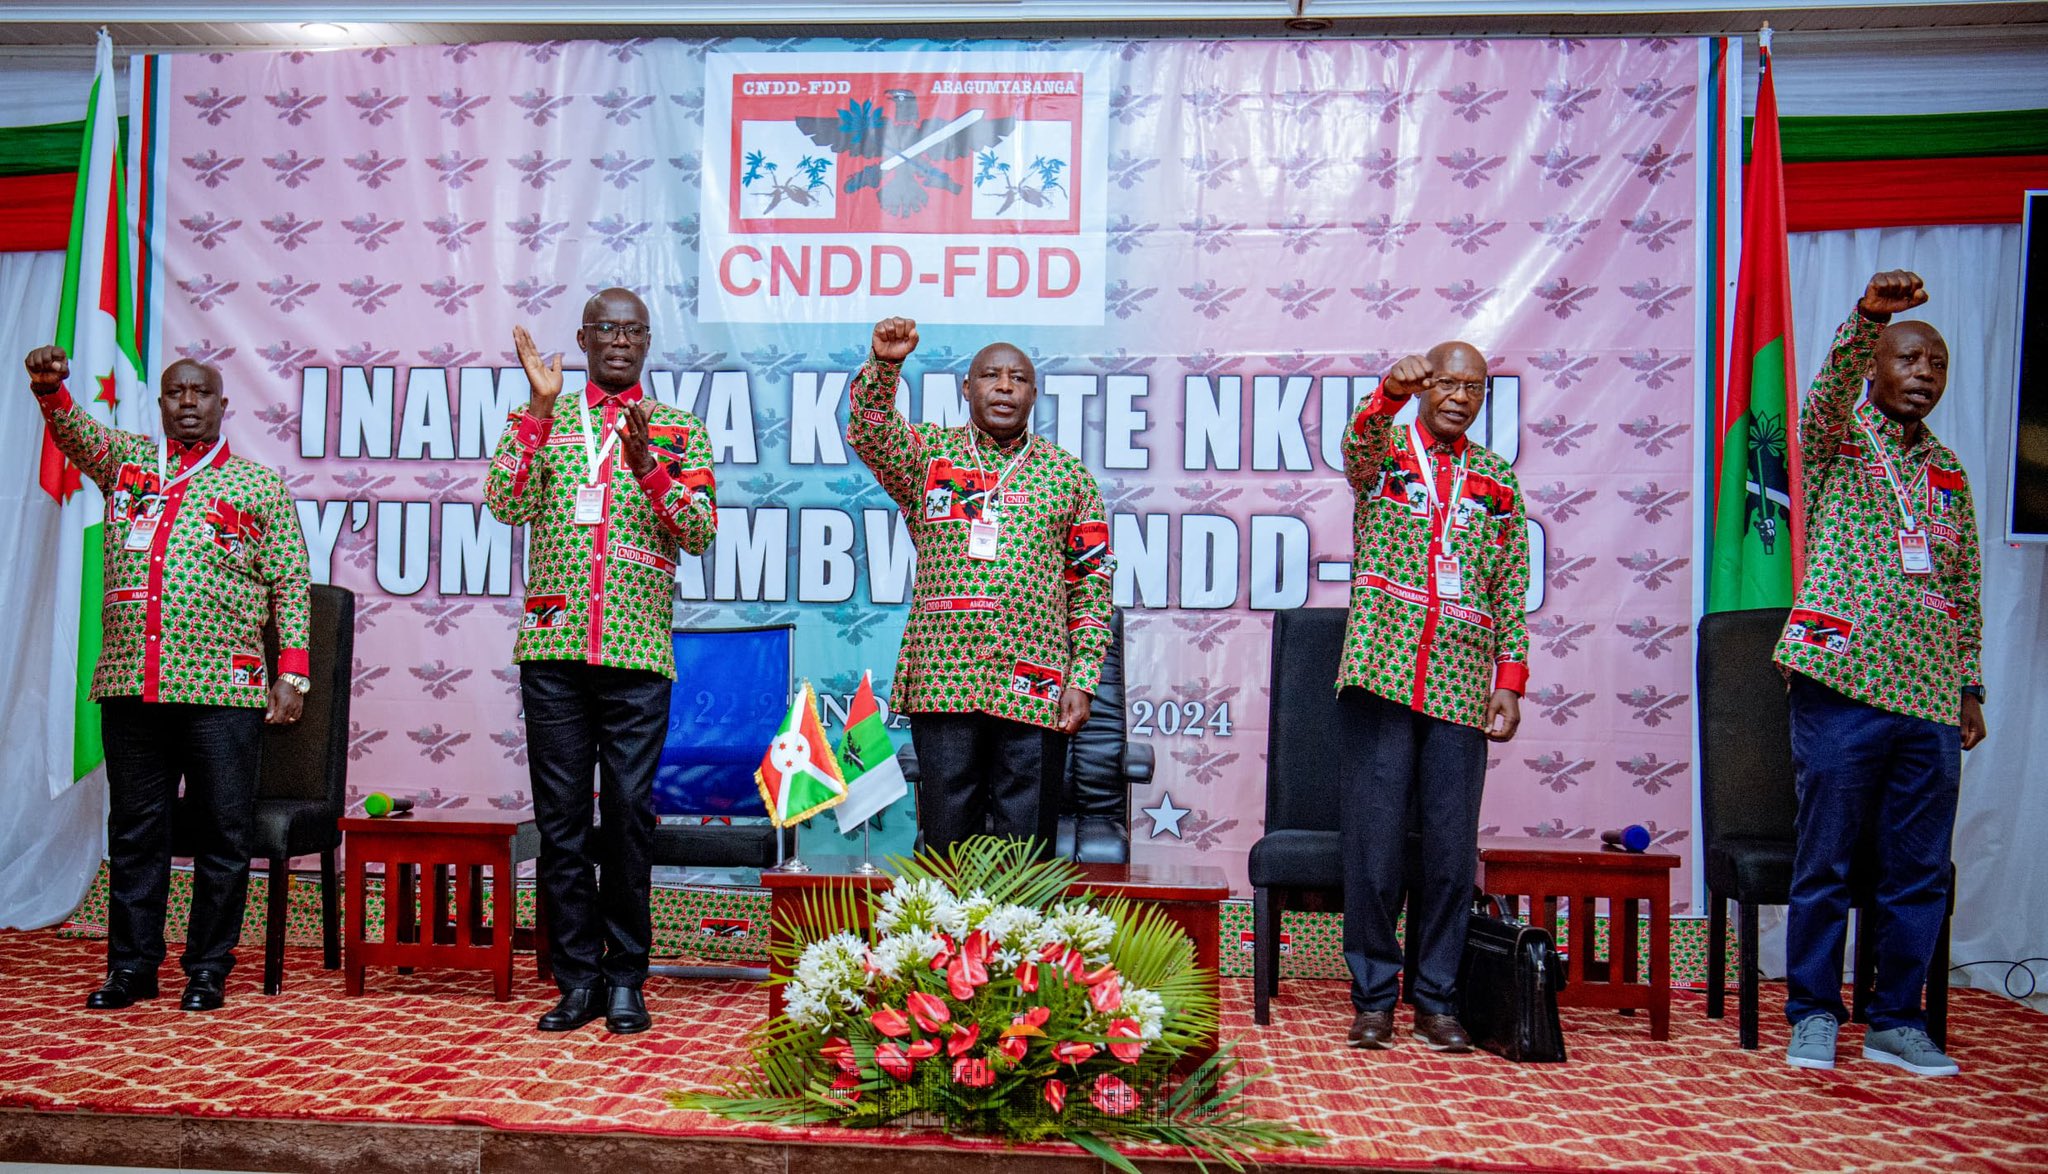 Le Président Ndayishimiye rehausse les travaux du comité central du parti CNDD-FDD